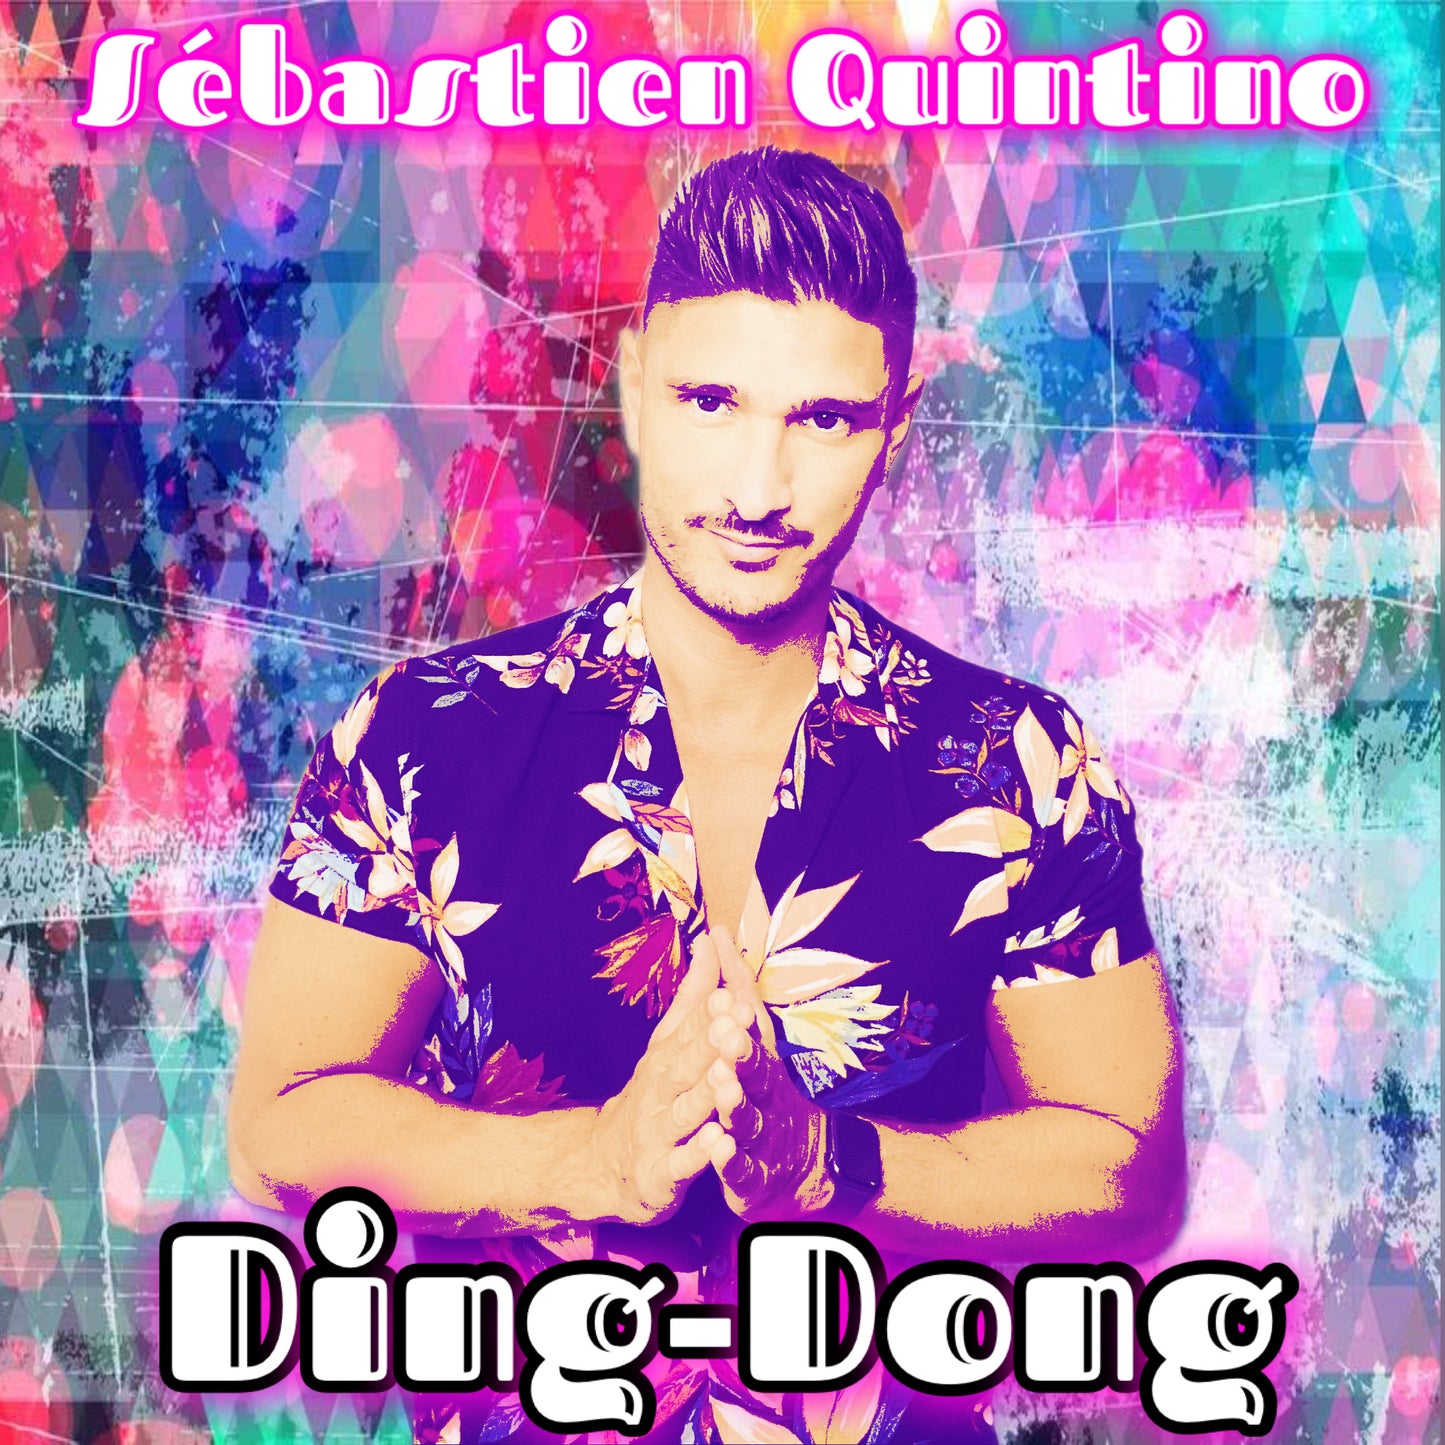 CD Ding-Dong - Sébastien Quintino